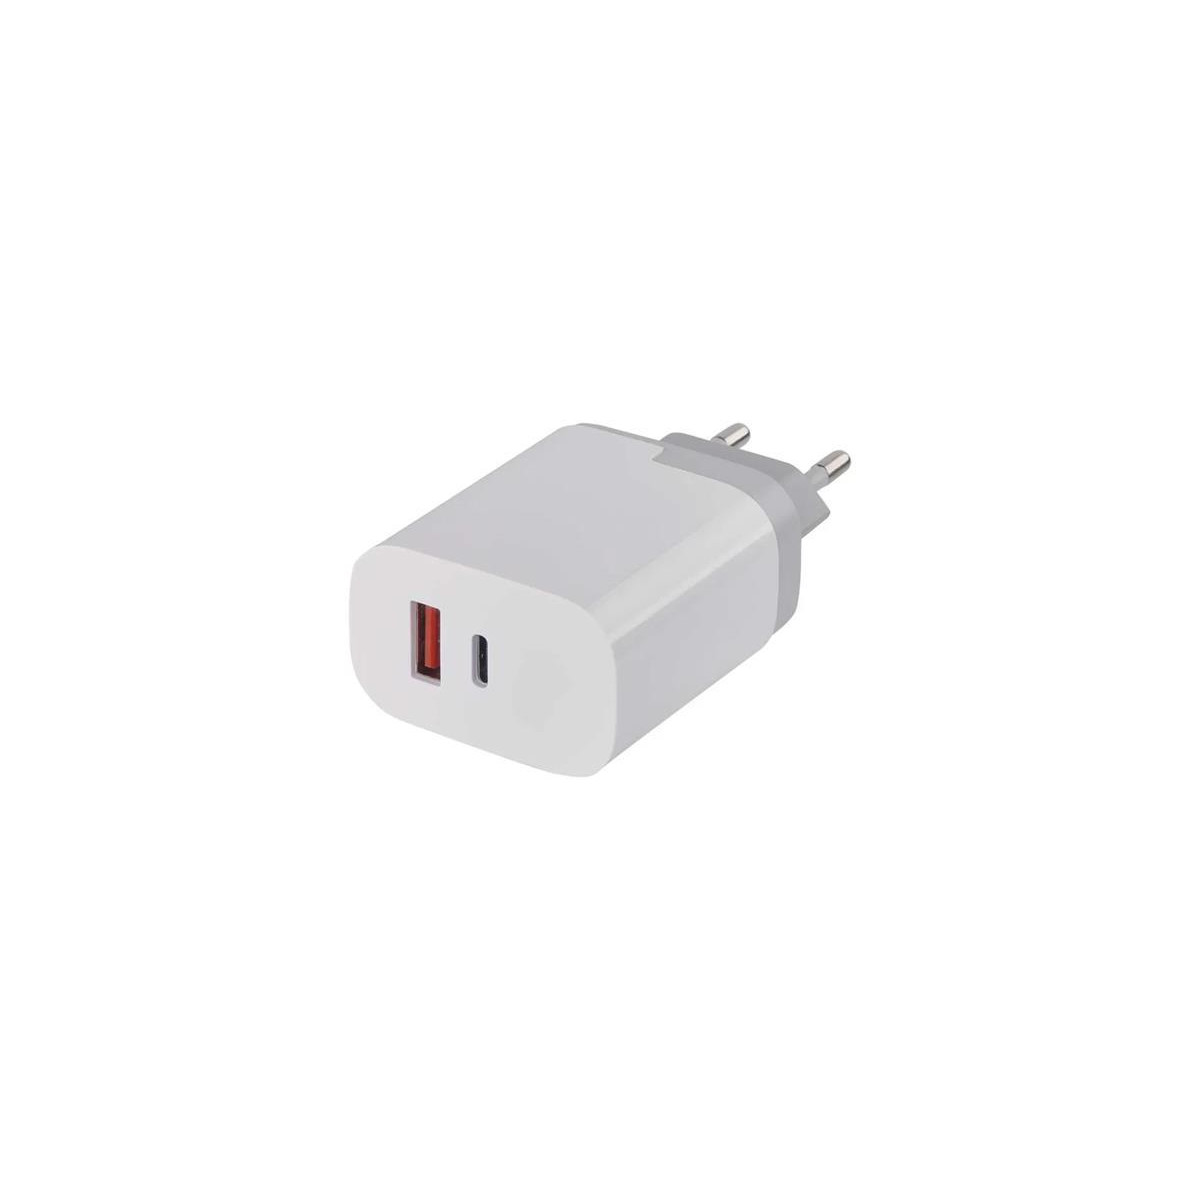 Adaptér USB EMOS V0120